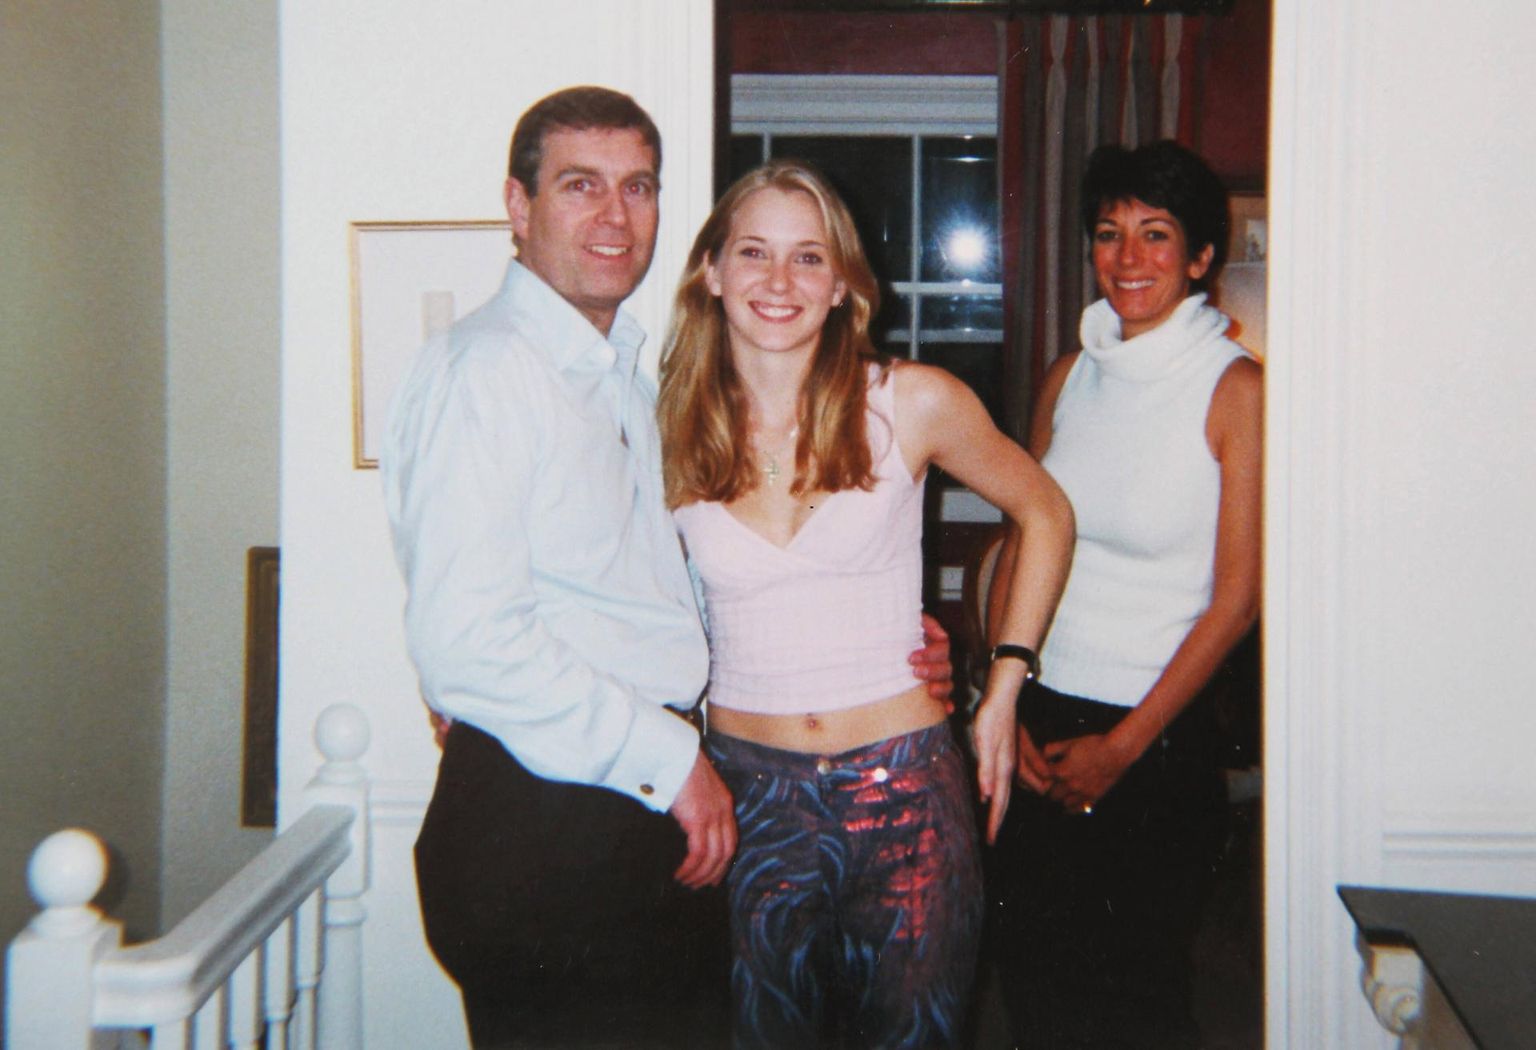 Prints Andrew 2001. aasta alguses jäädvustatud fotol koos teda seksuaalrünnakus süüdistava Virginia Robertsiga (nüüdse nimega Virginia Giuffre), taamal äsja alaealise kupeldamises süüdi mõistetud Ghislaine Maxwell. 